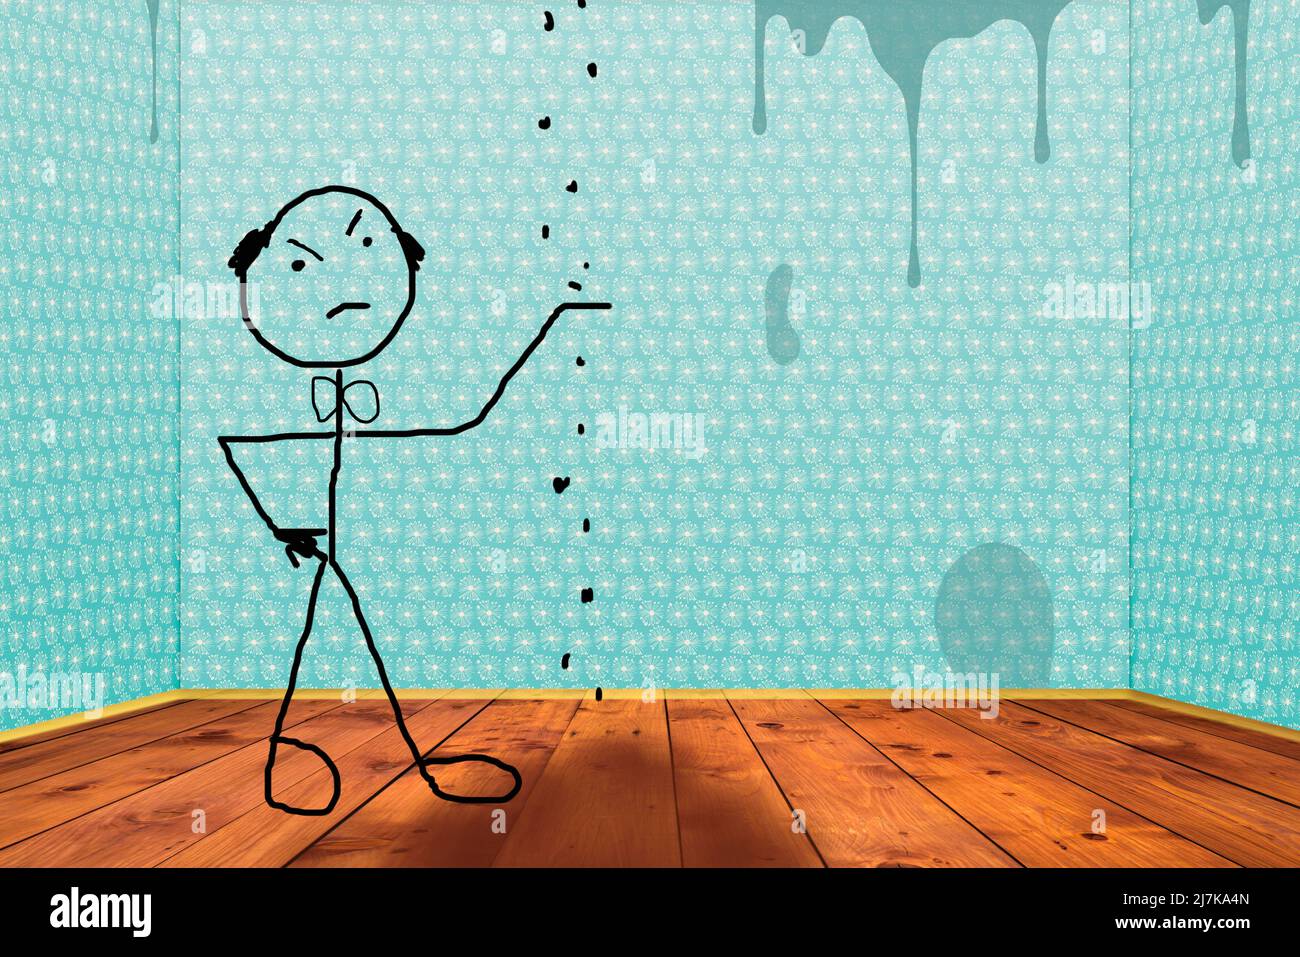 Assurance habitation pour dommages d'eau. Stickman dessin d'un homme en colère vérifiant les dommages de fuite dans sa maison Banque D'Images